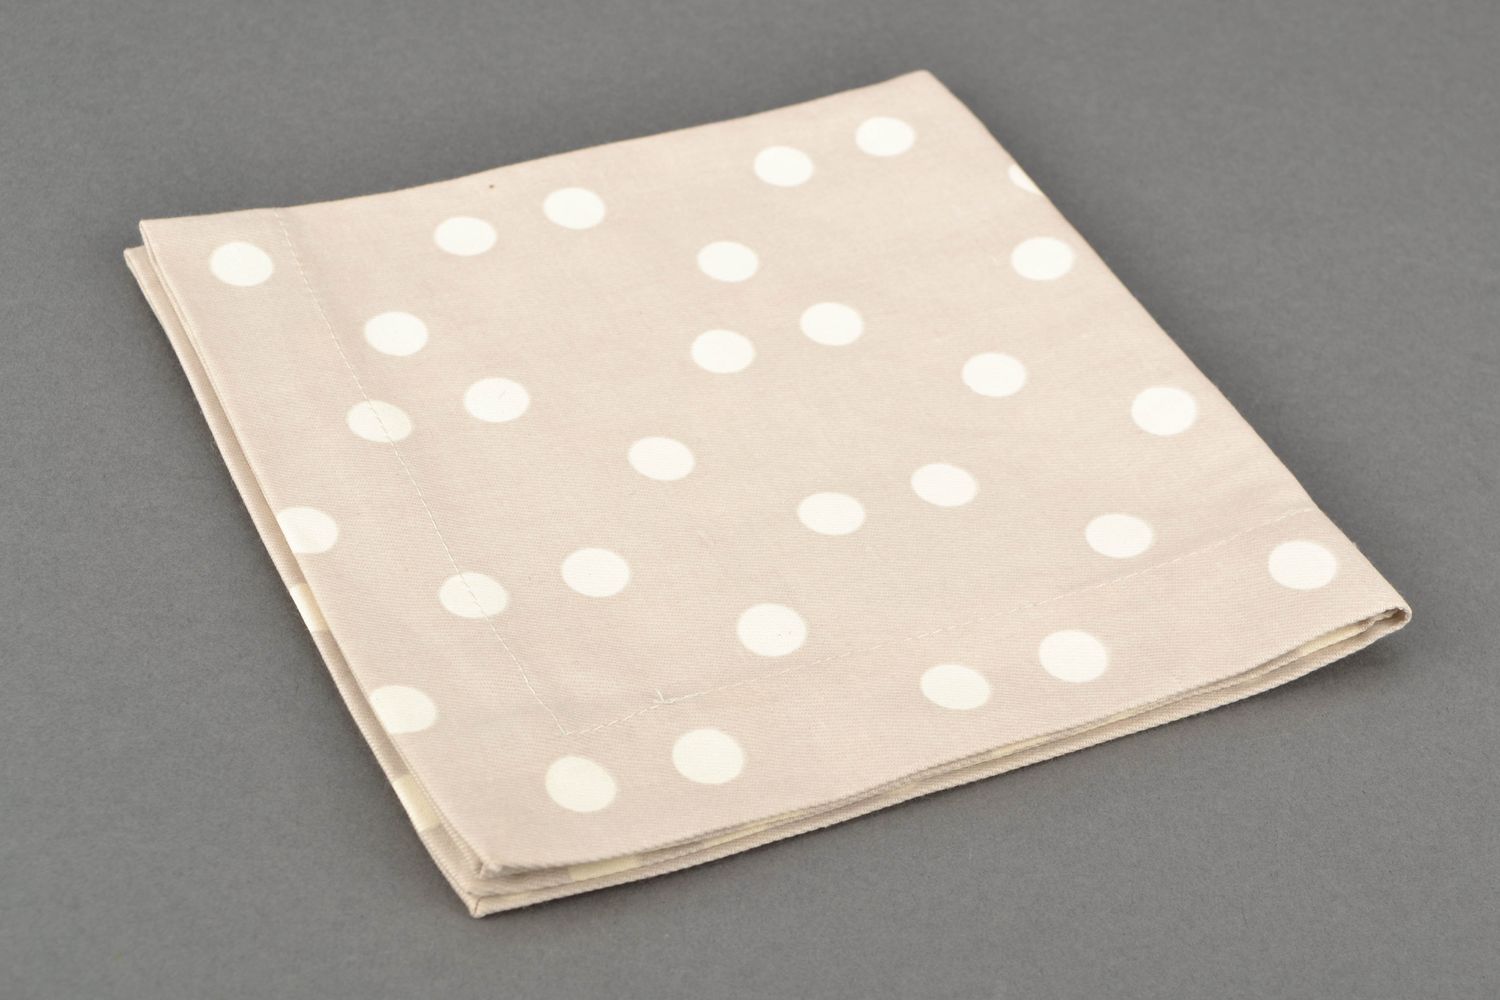 Polka dot fabric kitchen napkin photo 3